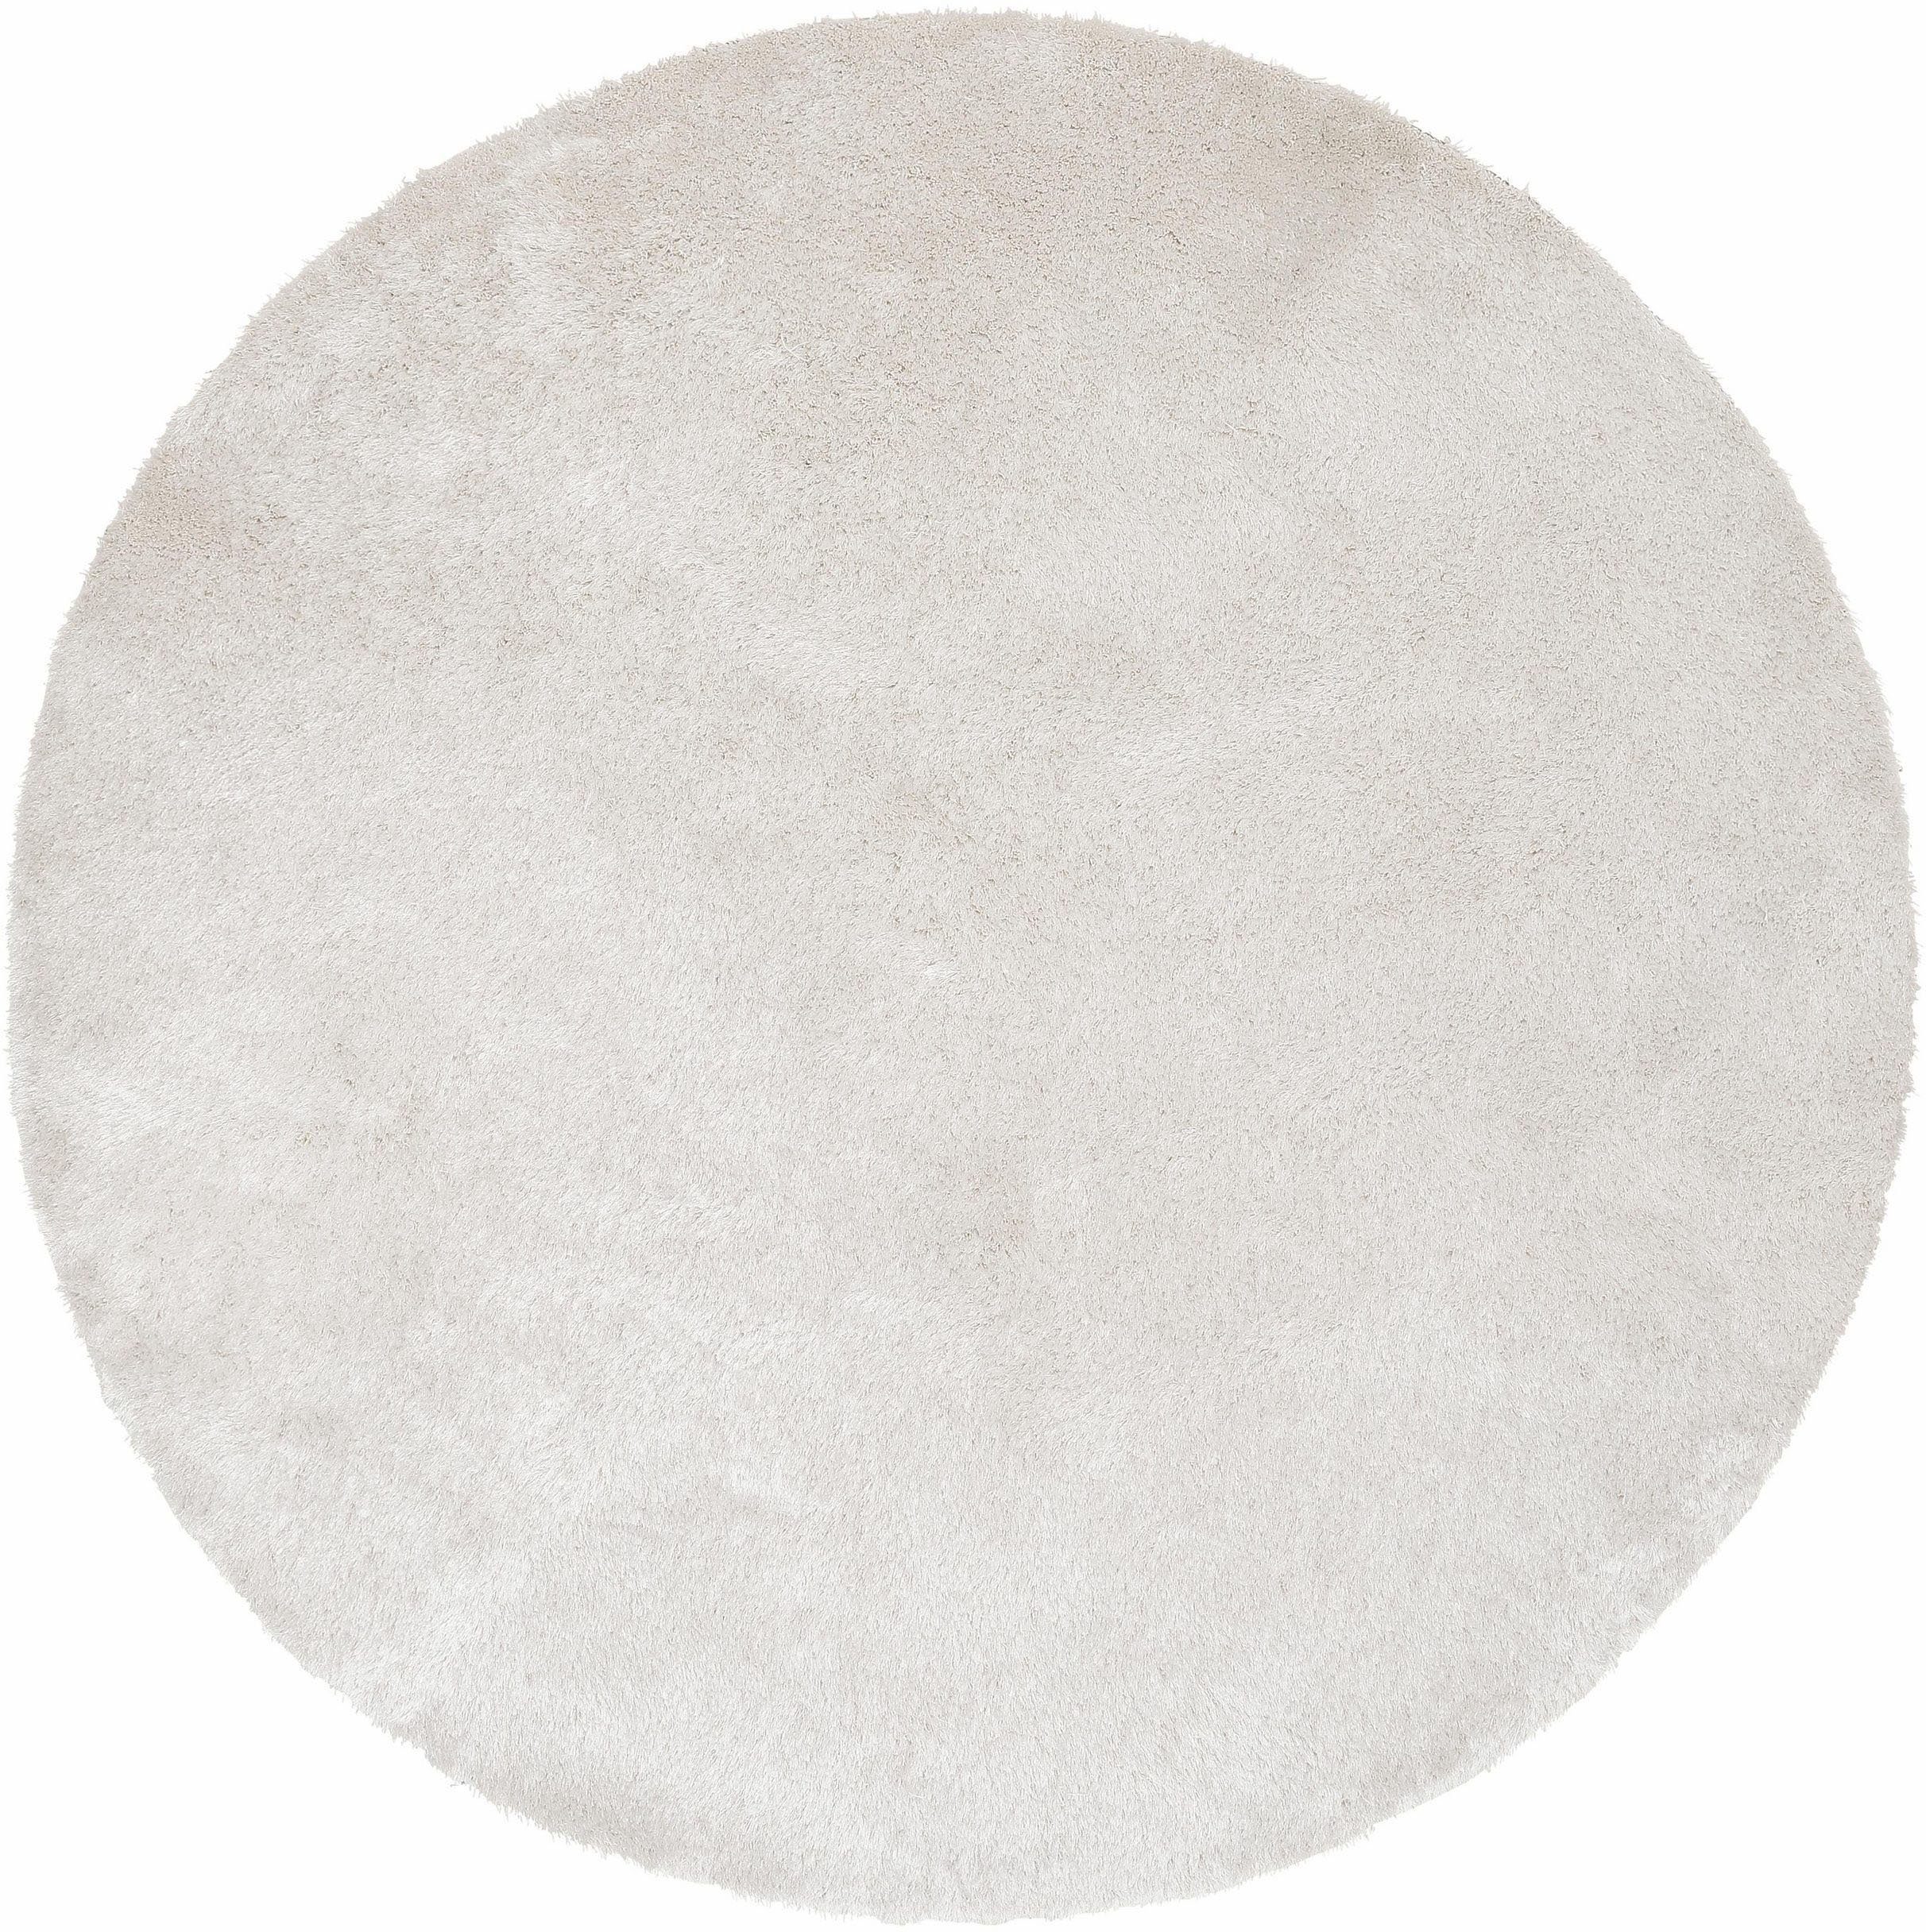 Hochflor-Teppich Deman, Home affaire, rund, Höhe: 25 mm, Uni-Farben, besonders weich und kuschelig durch Mikrofaser, rund weiß